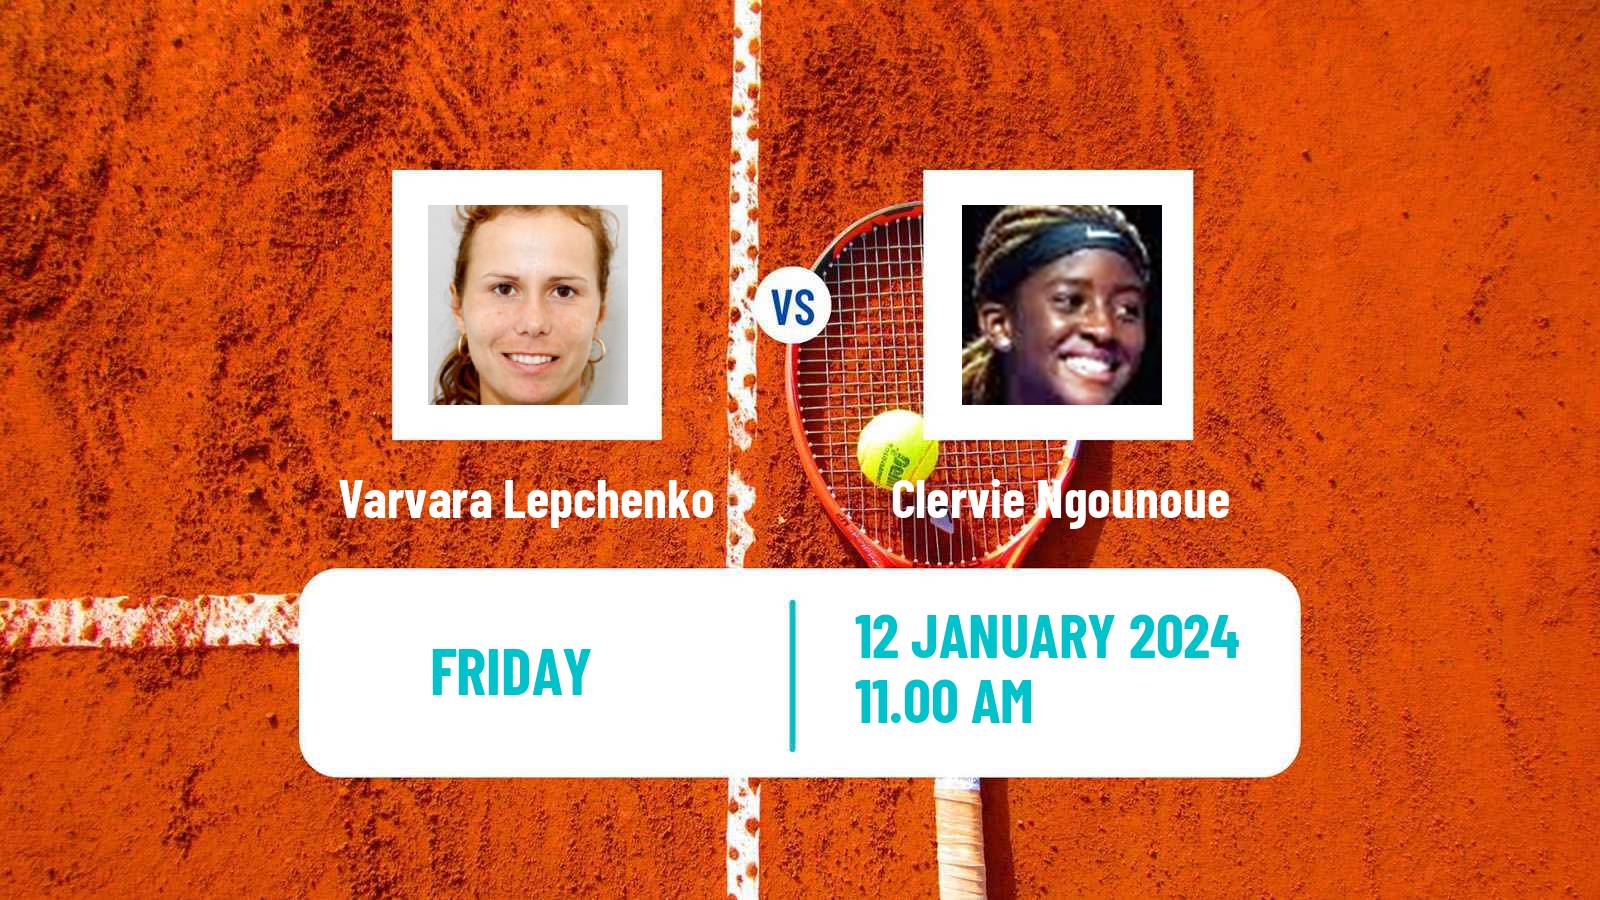 Tennis ITF W35 Naples Fl Women Varvara Lepchenko - Clervie Ngounoue